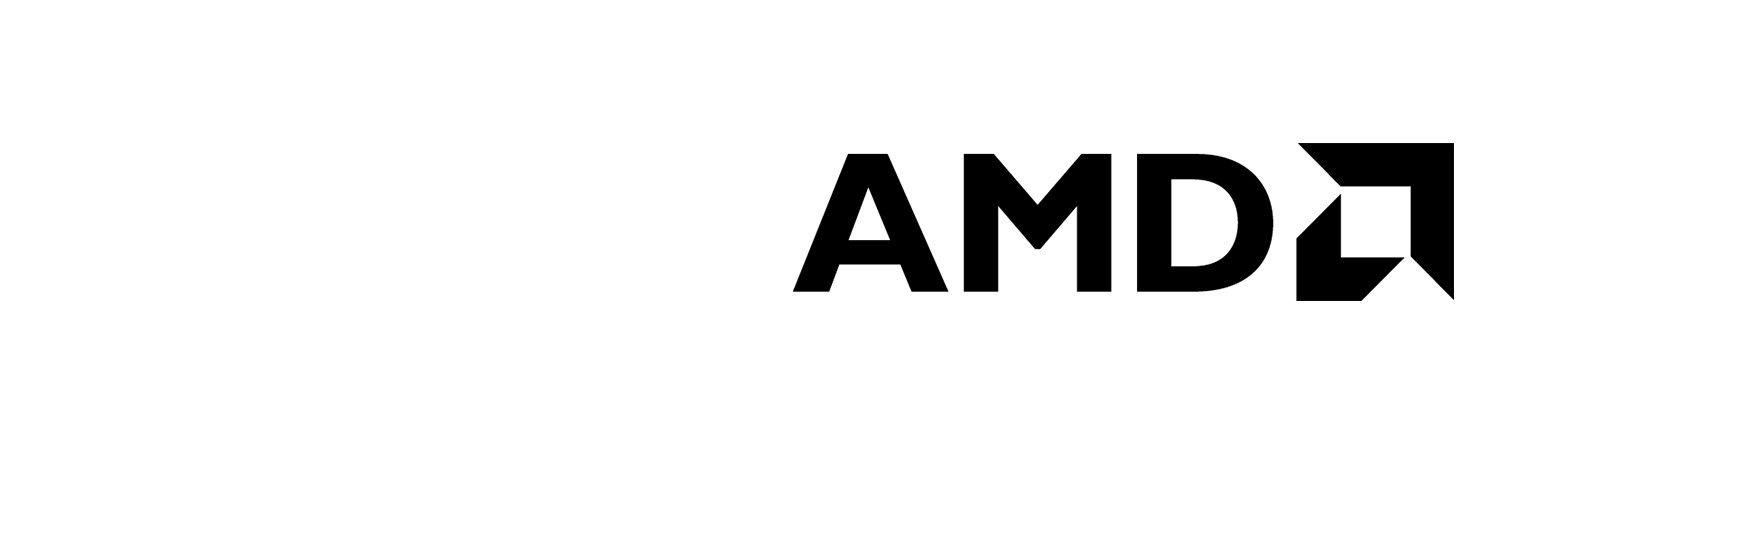 AMD Logo - AMD